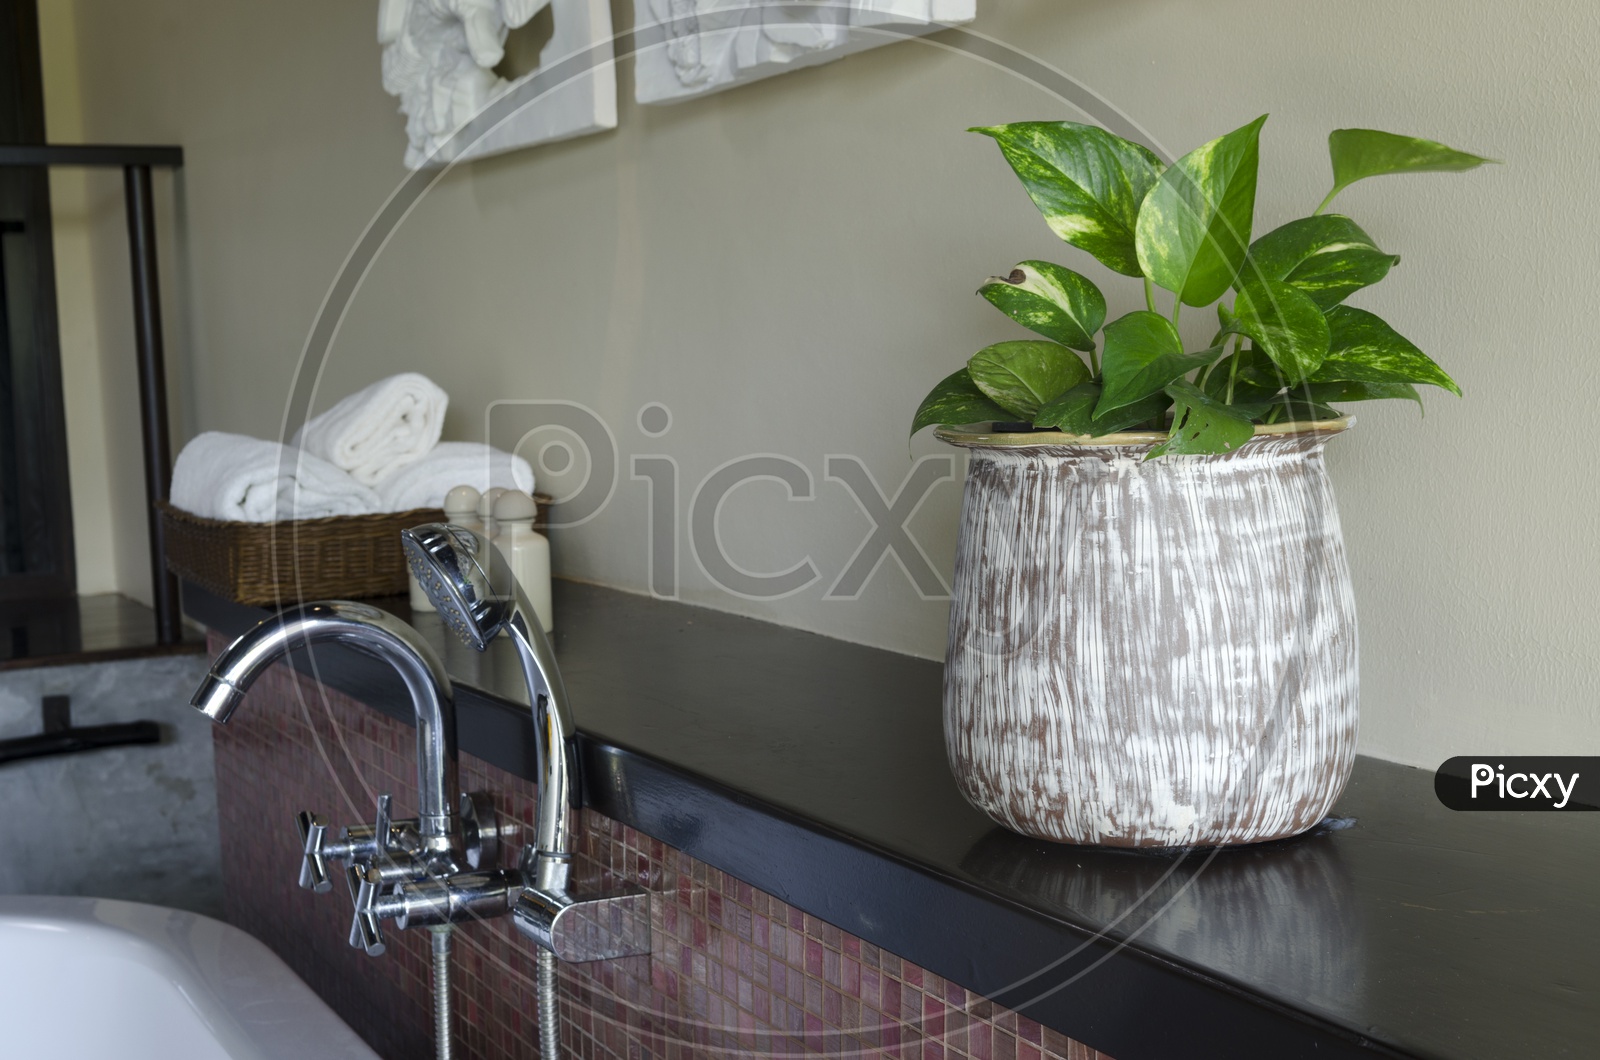 A decorative indoor plant pot